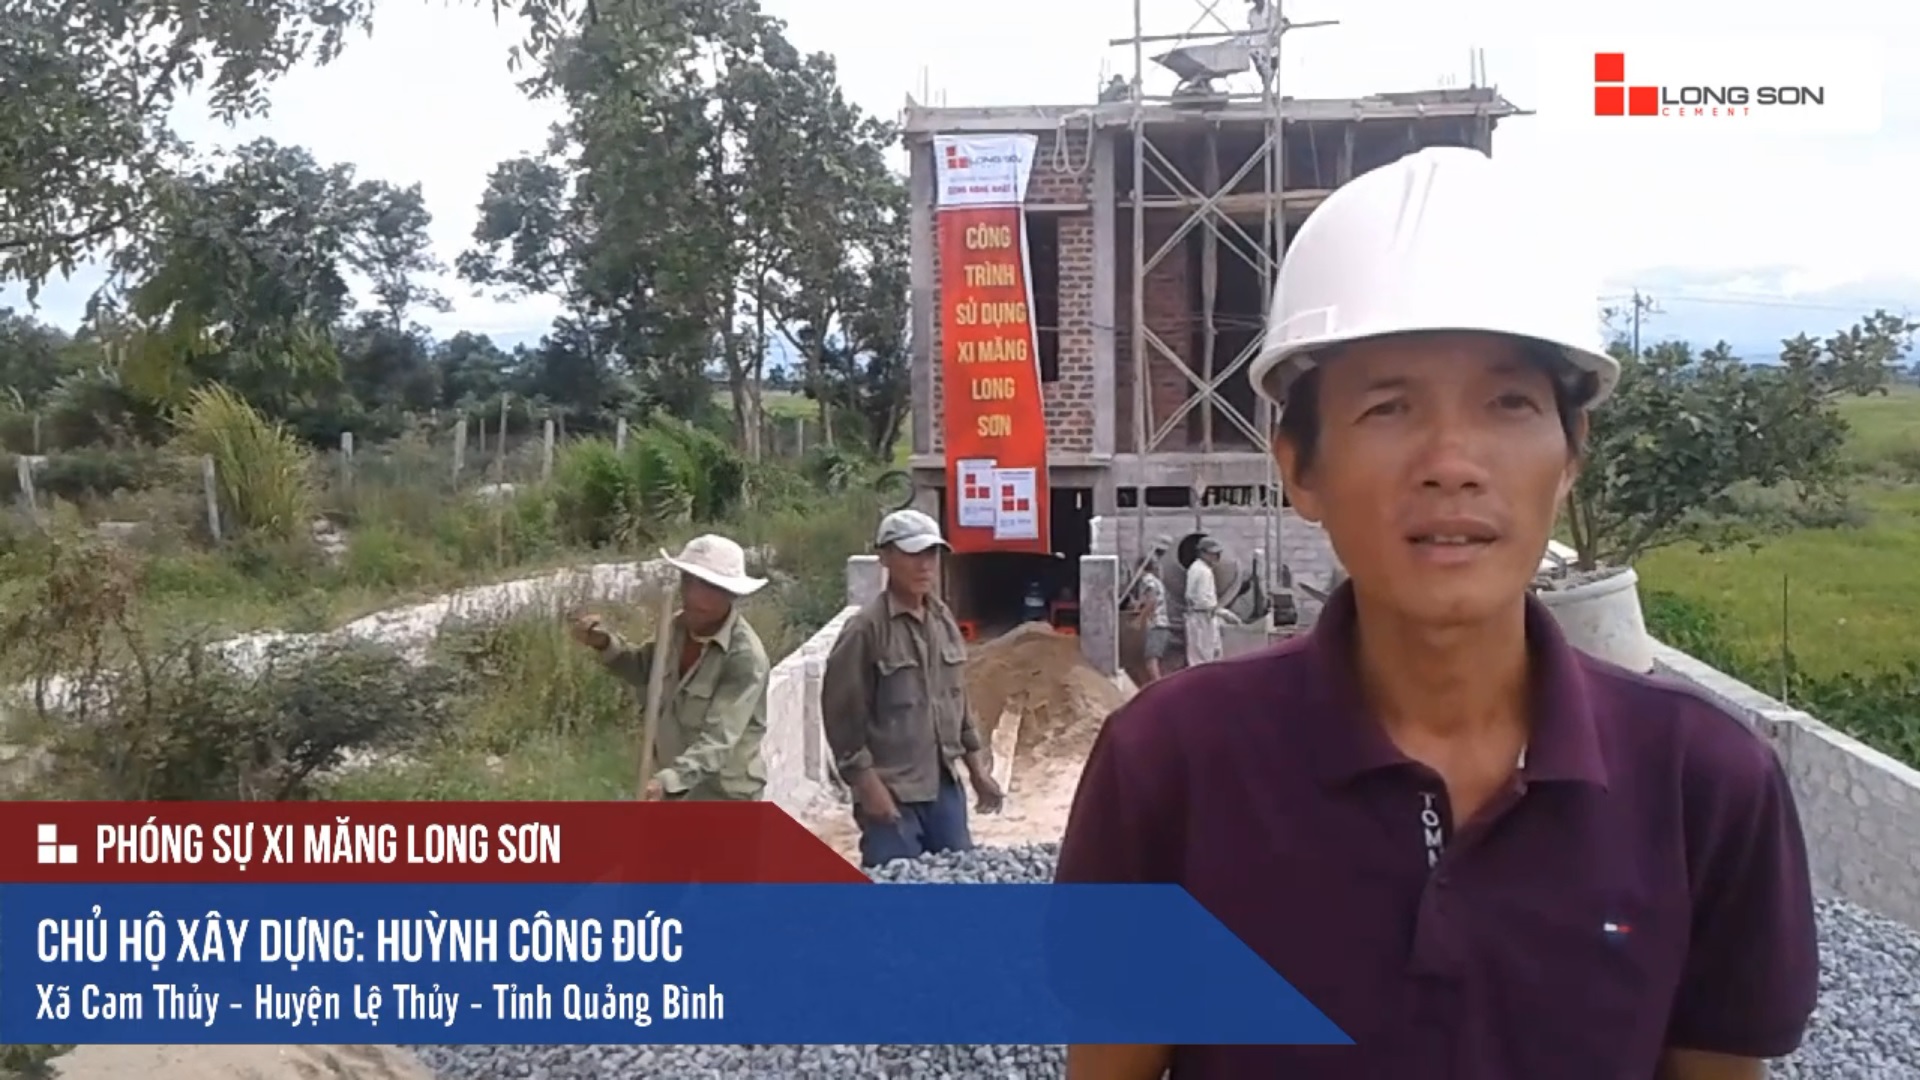 Phóng sự công trình sử dụng Xi măng Long Sơn tại Quảng Bình 12.06.2018